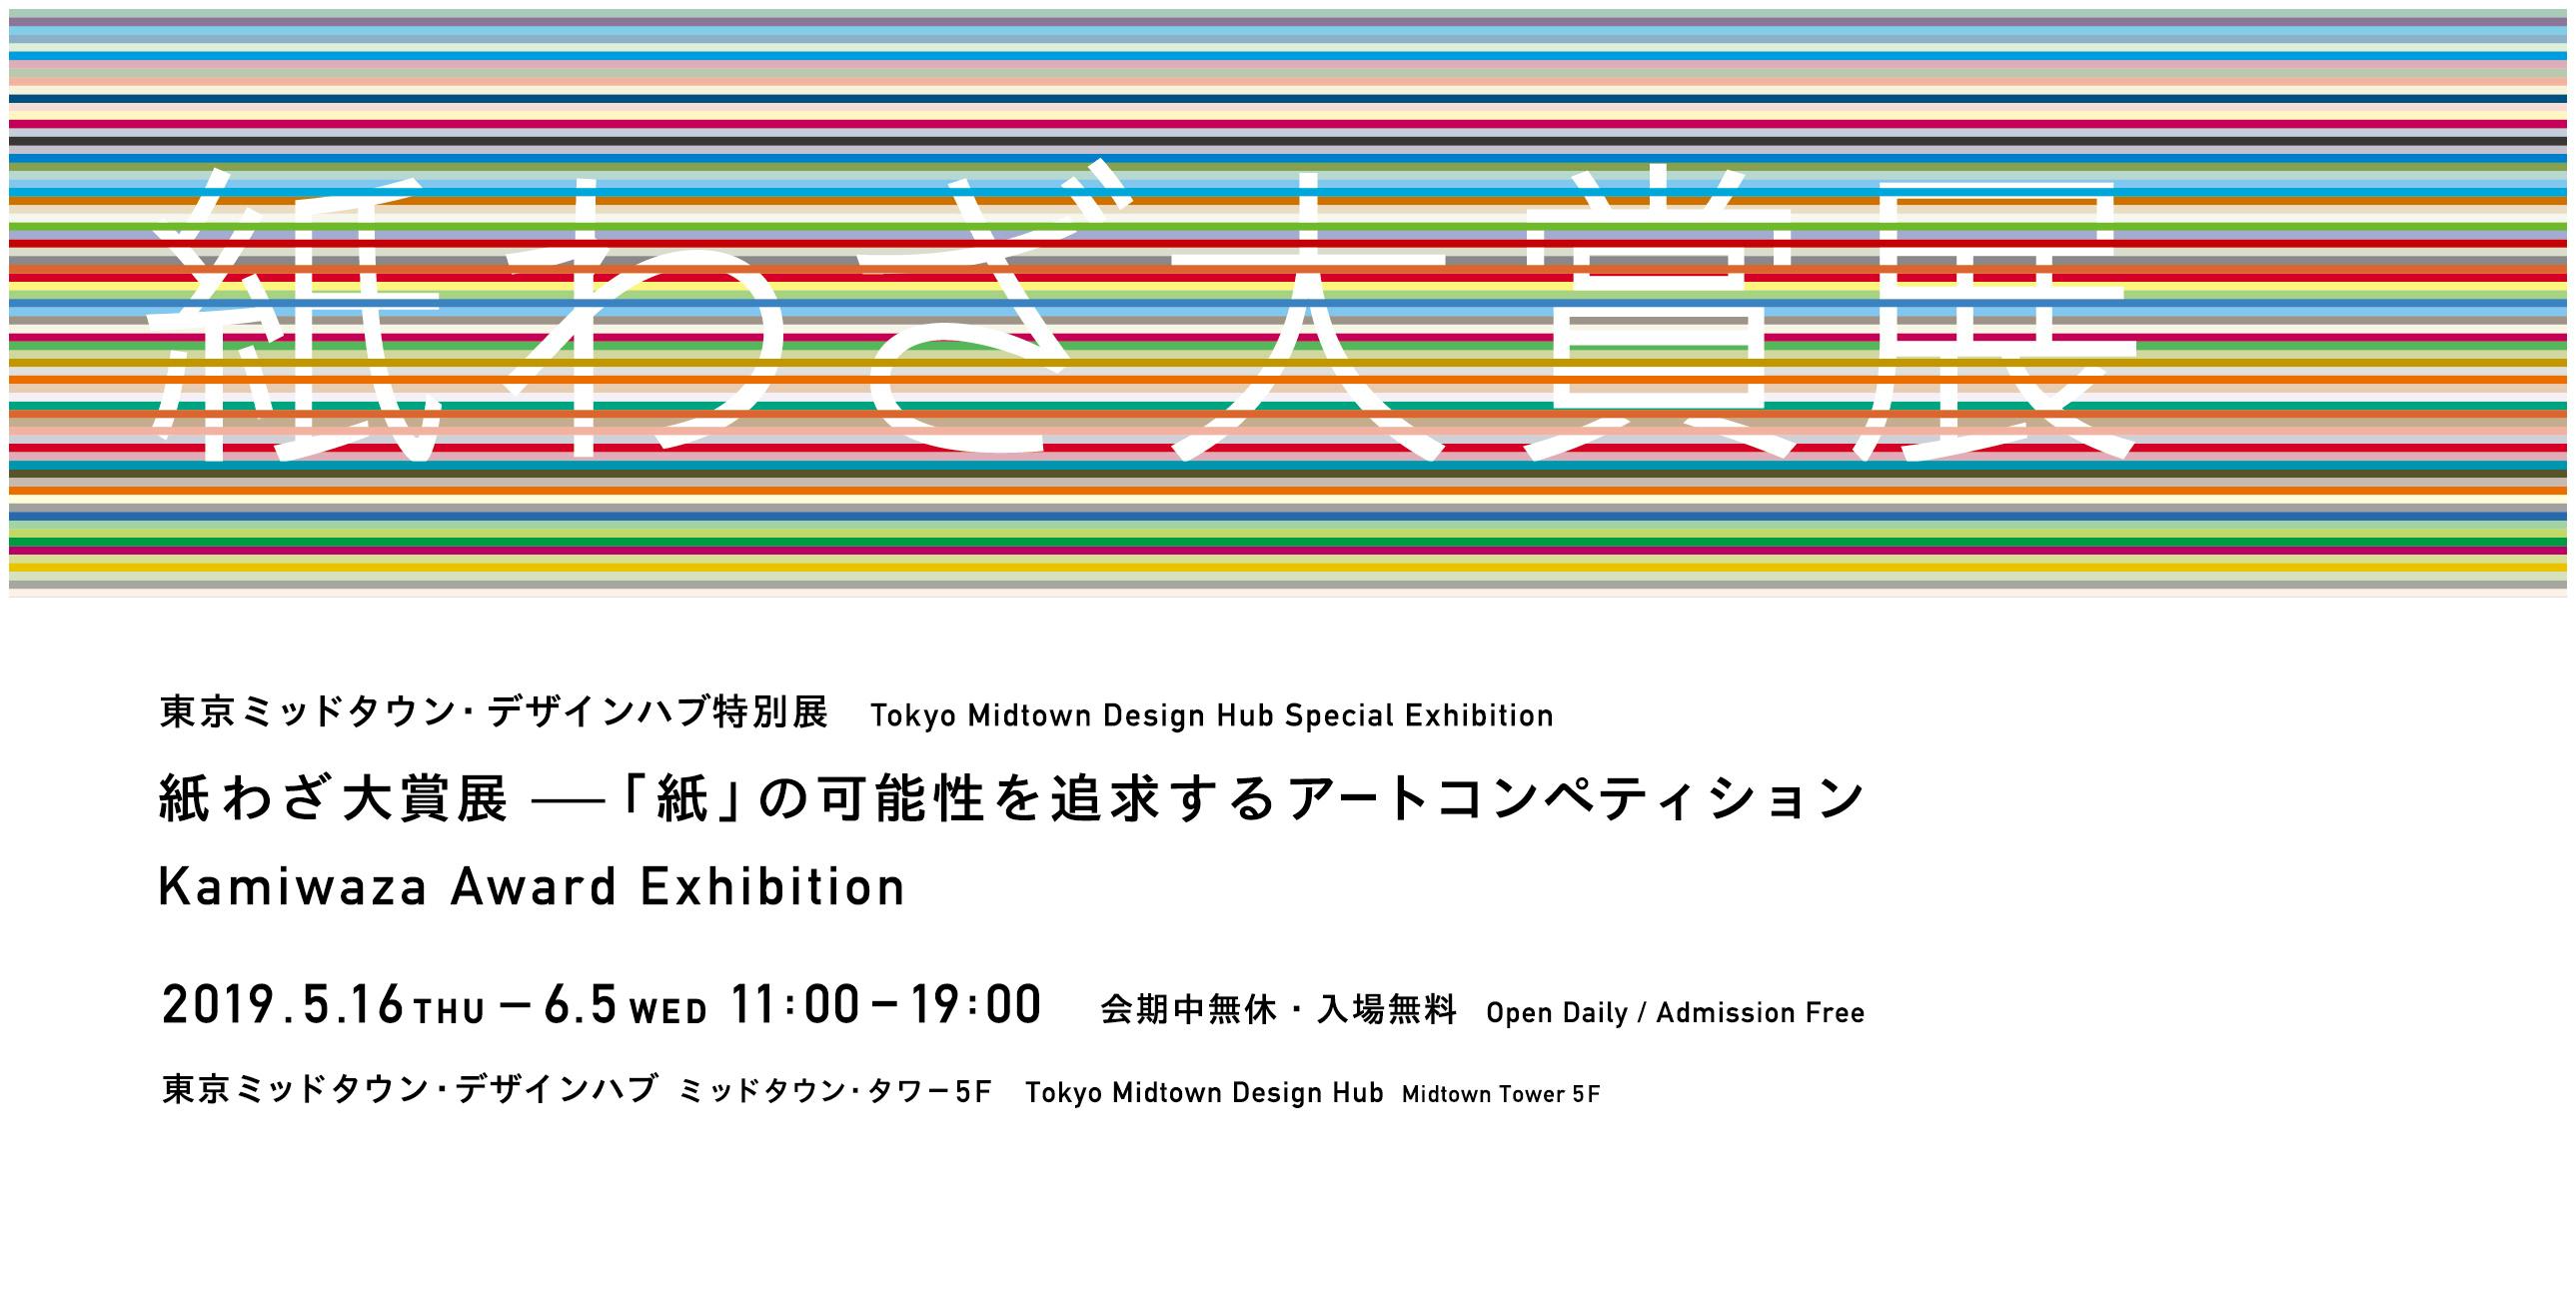 Kamiwaza Award Exhibition